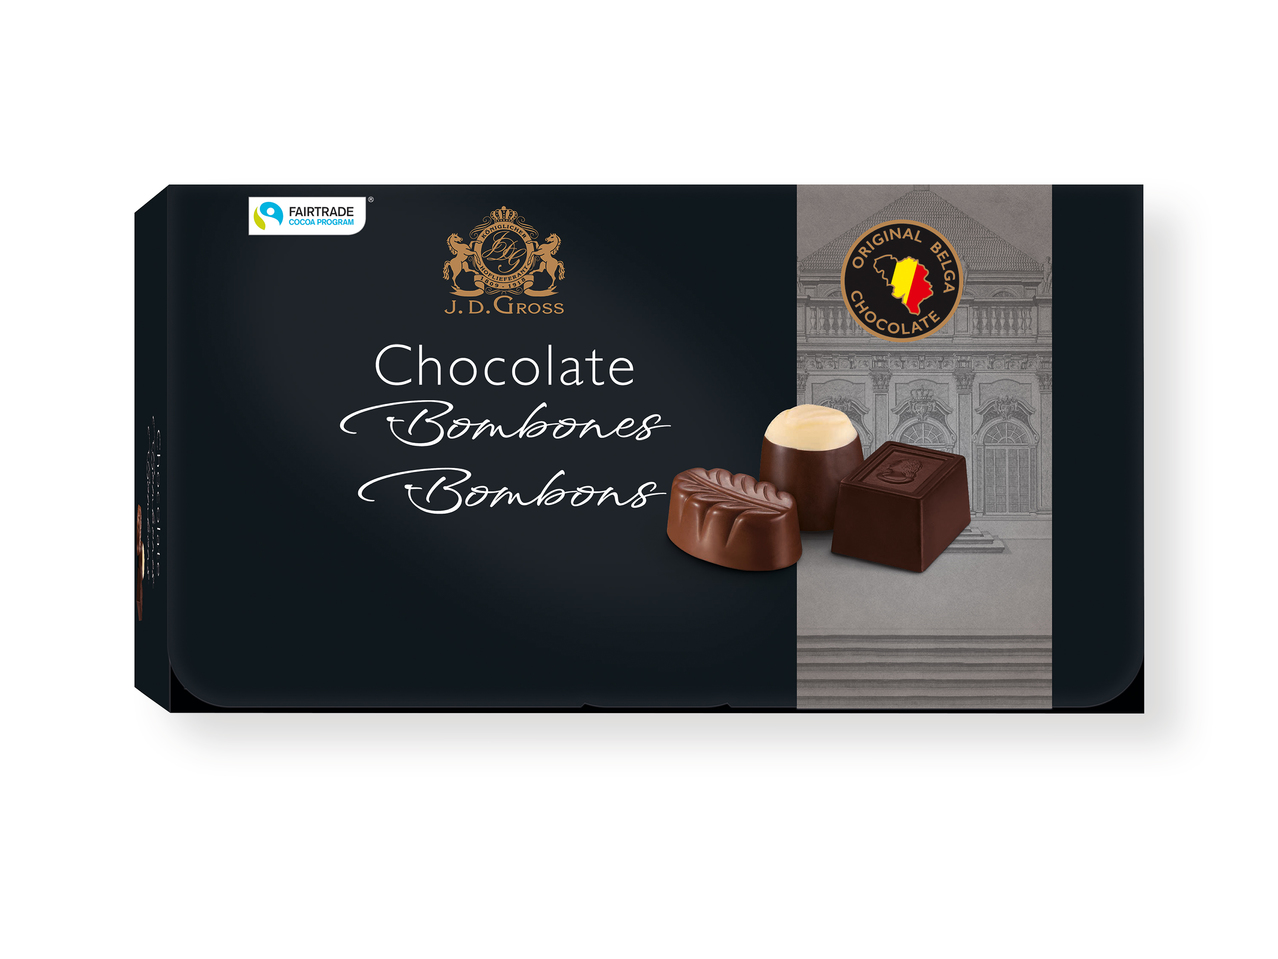 'J.D. Gross(R)' Bombones con chocolate belga